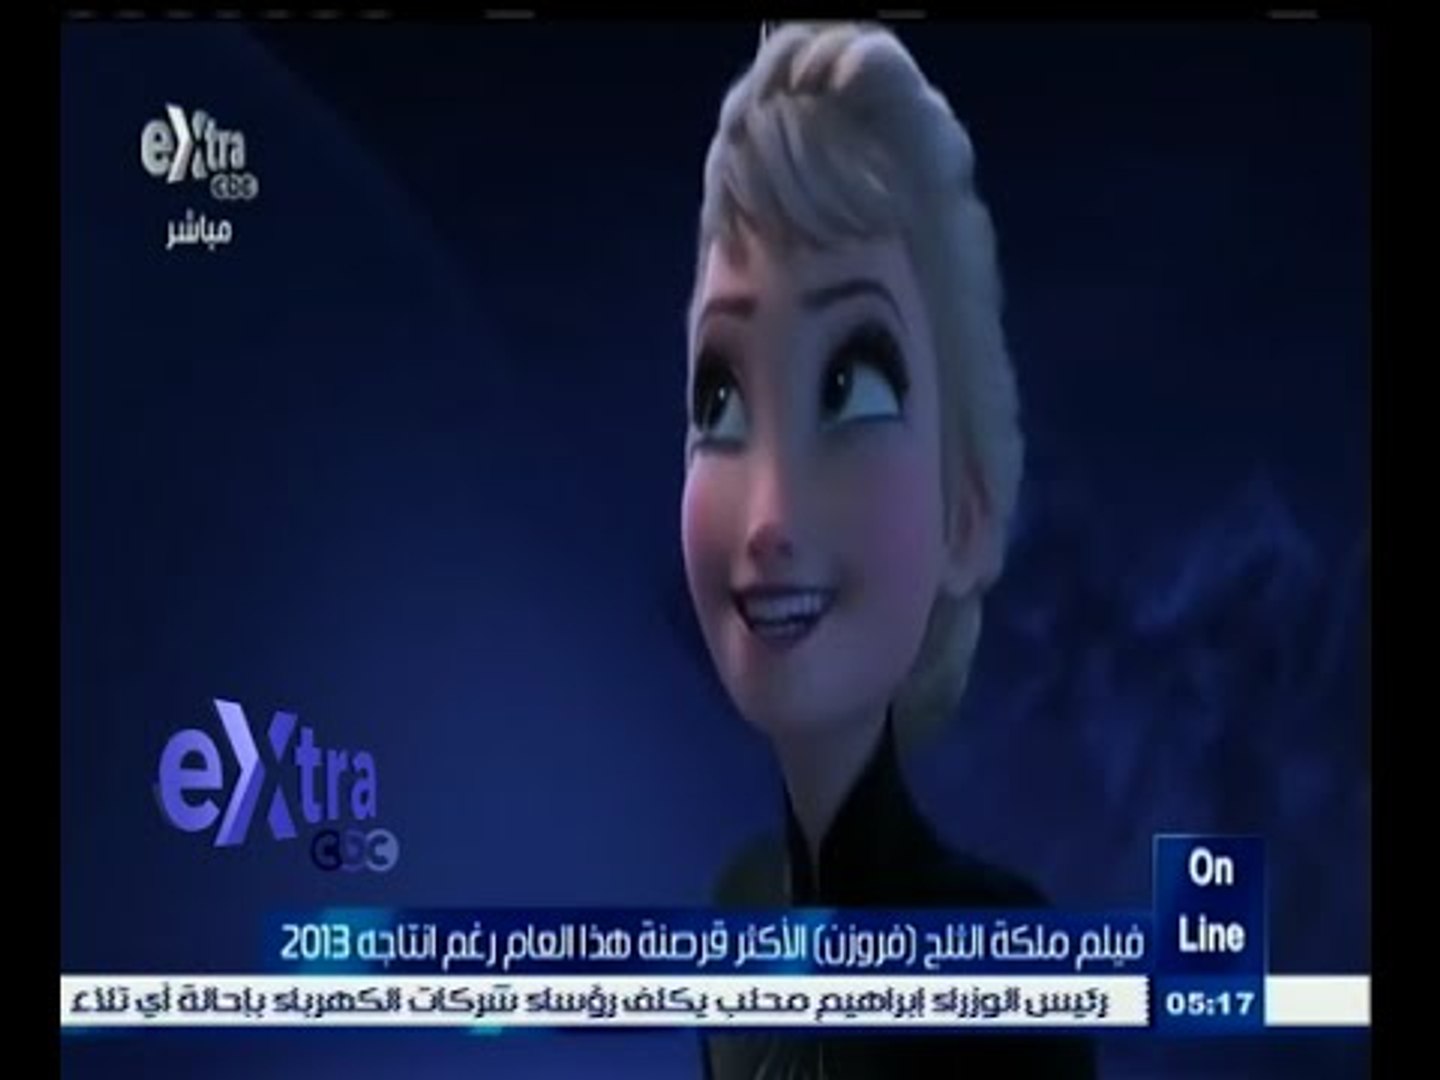 غرفة_الأخبار | فيلم ملكة الثلج "فروزن" الأكثر قرصنة هذا العام رغم انتاجه  2013 - video Dailymotion